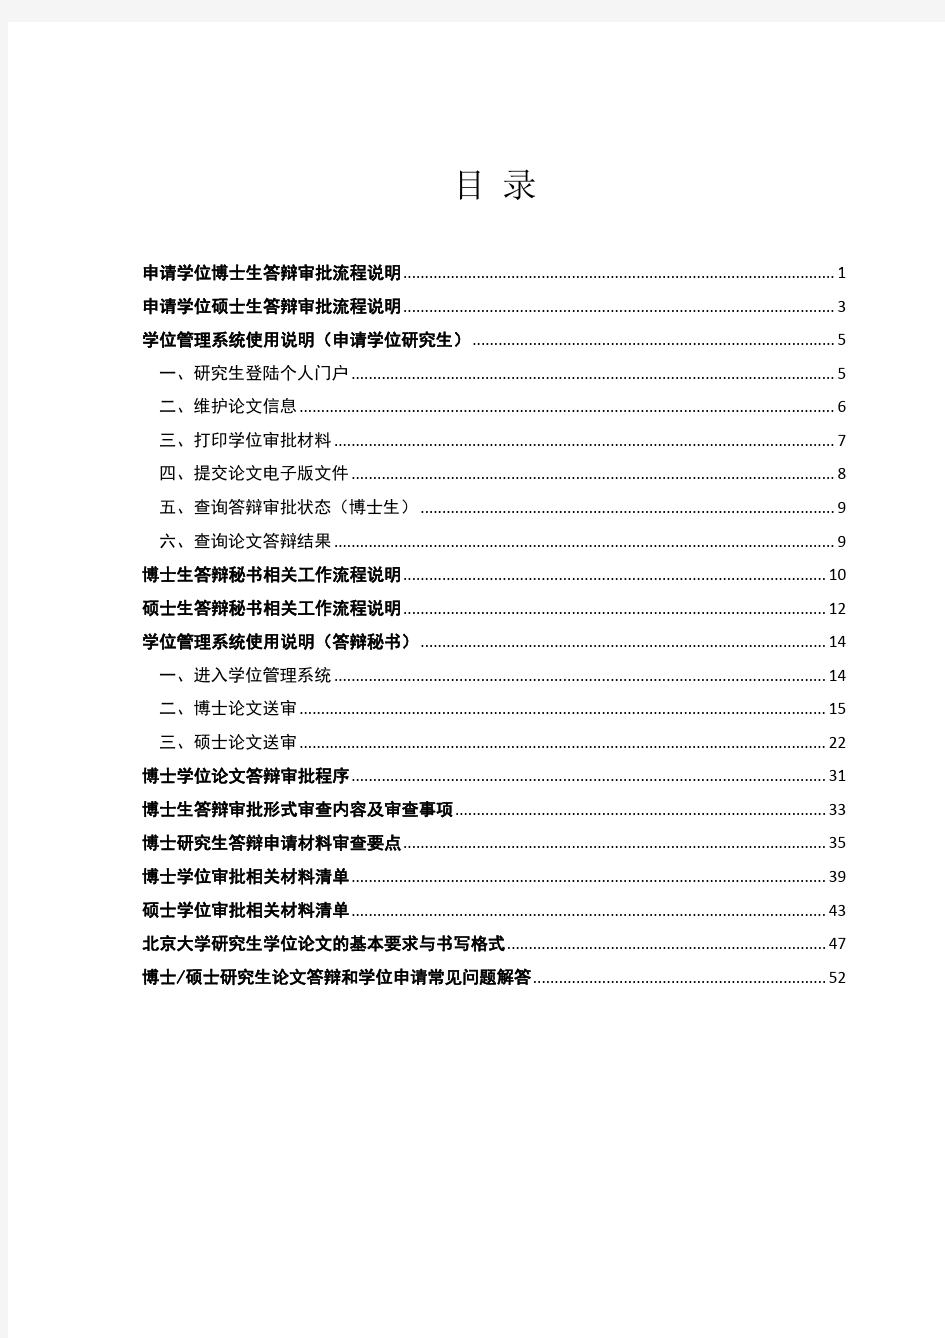 北京大学研究生论文答辩和学位申请指南